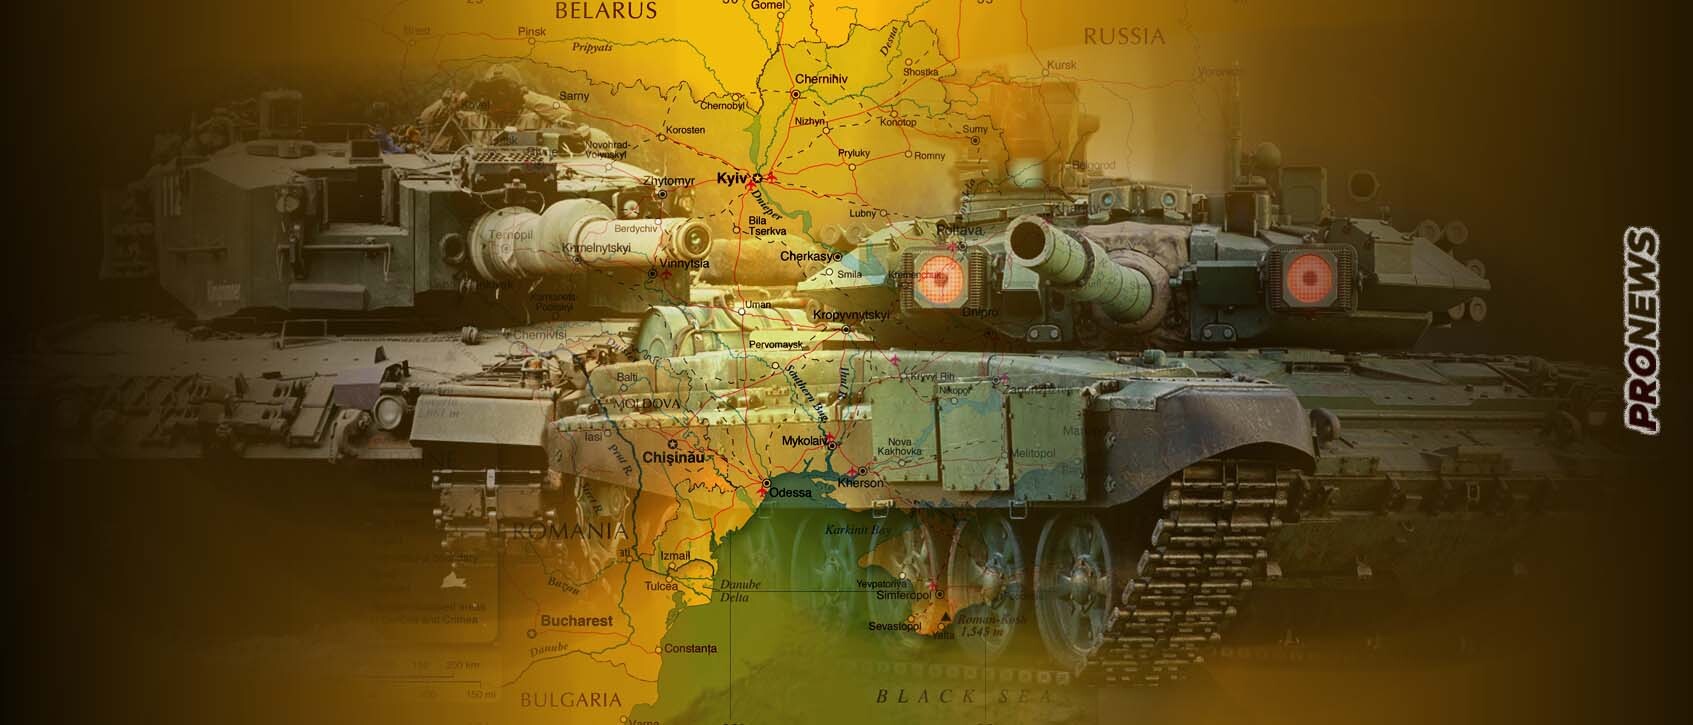 Εκατοντάδες άρματα μάχης στέλνει η Ρωσία στην ανατ.Ουκρανία ενόψει της άφιξης των Leopard 2A4